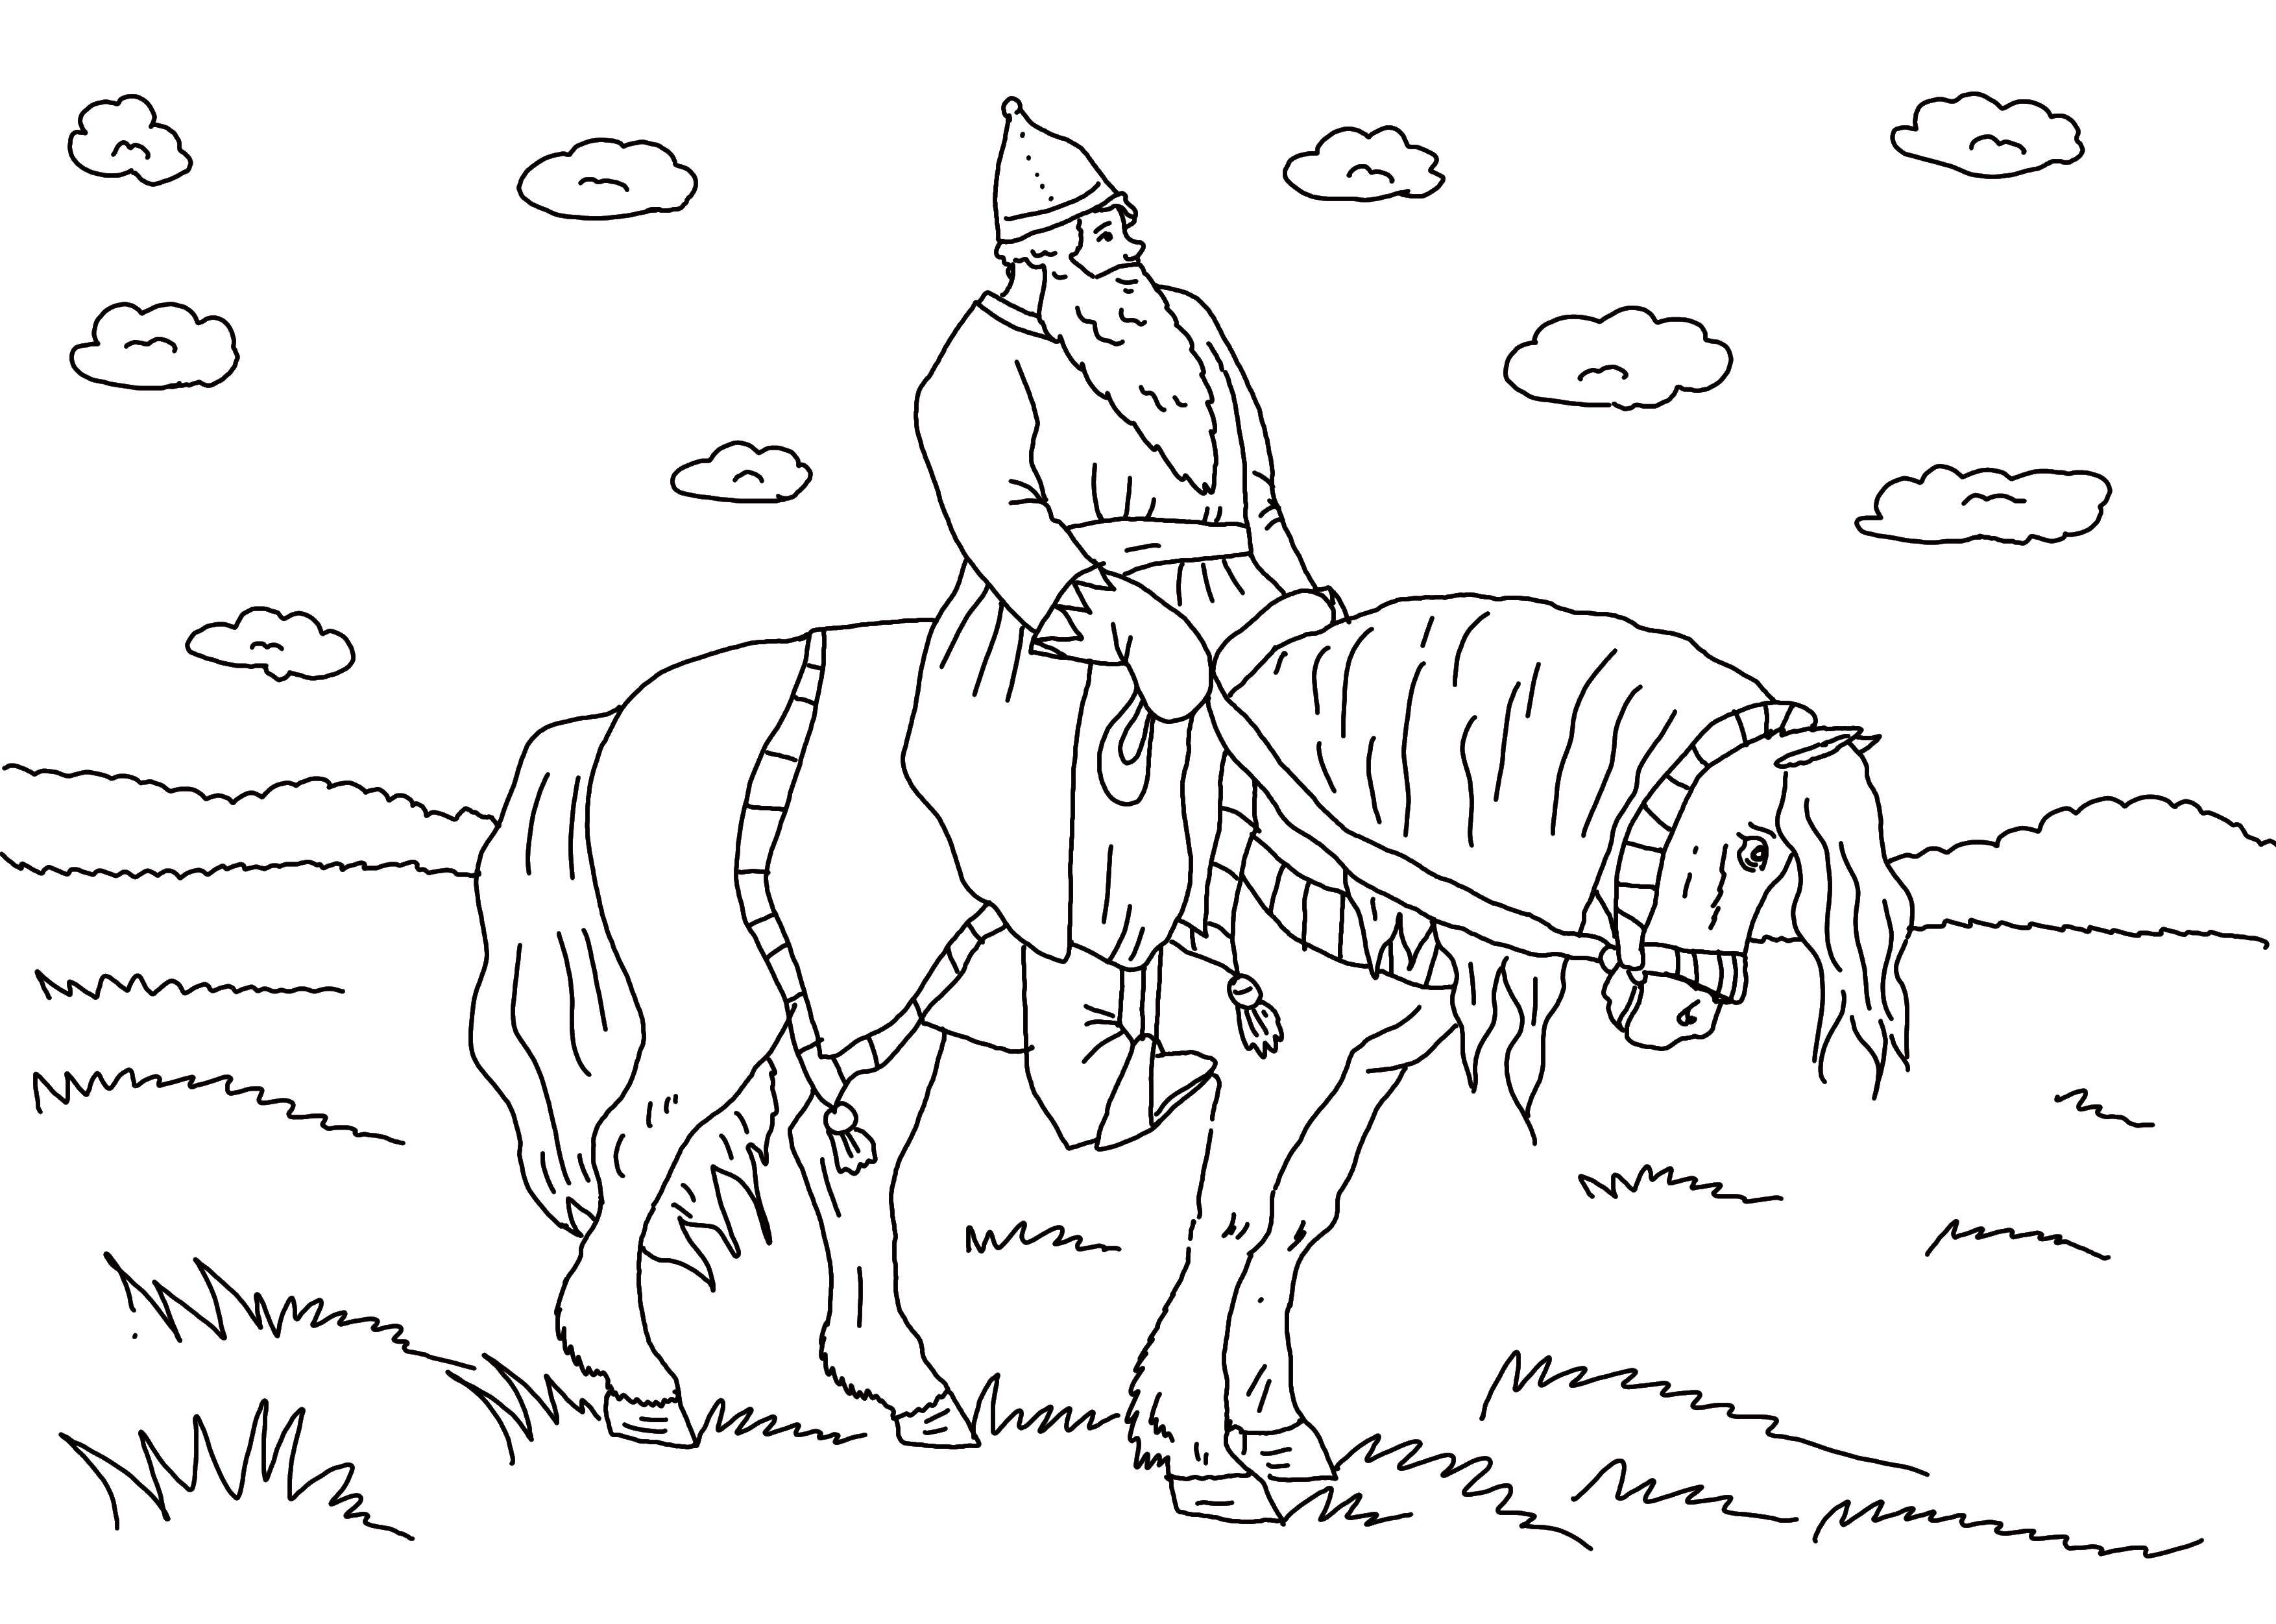 Опис: розмальовки  Богатир верхи на коні. Категорія: богатирі. Теги:  богатир, кінь.